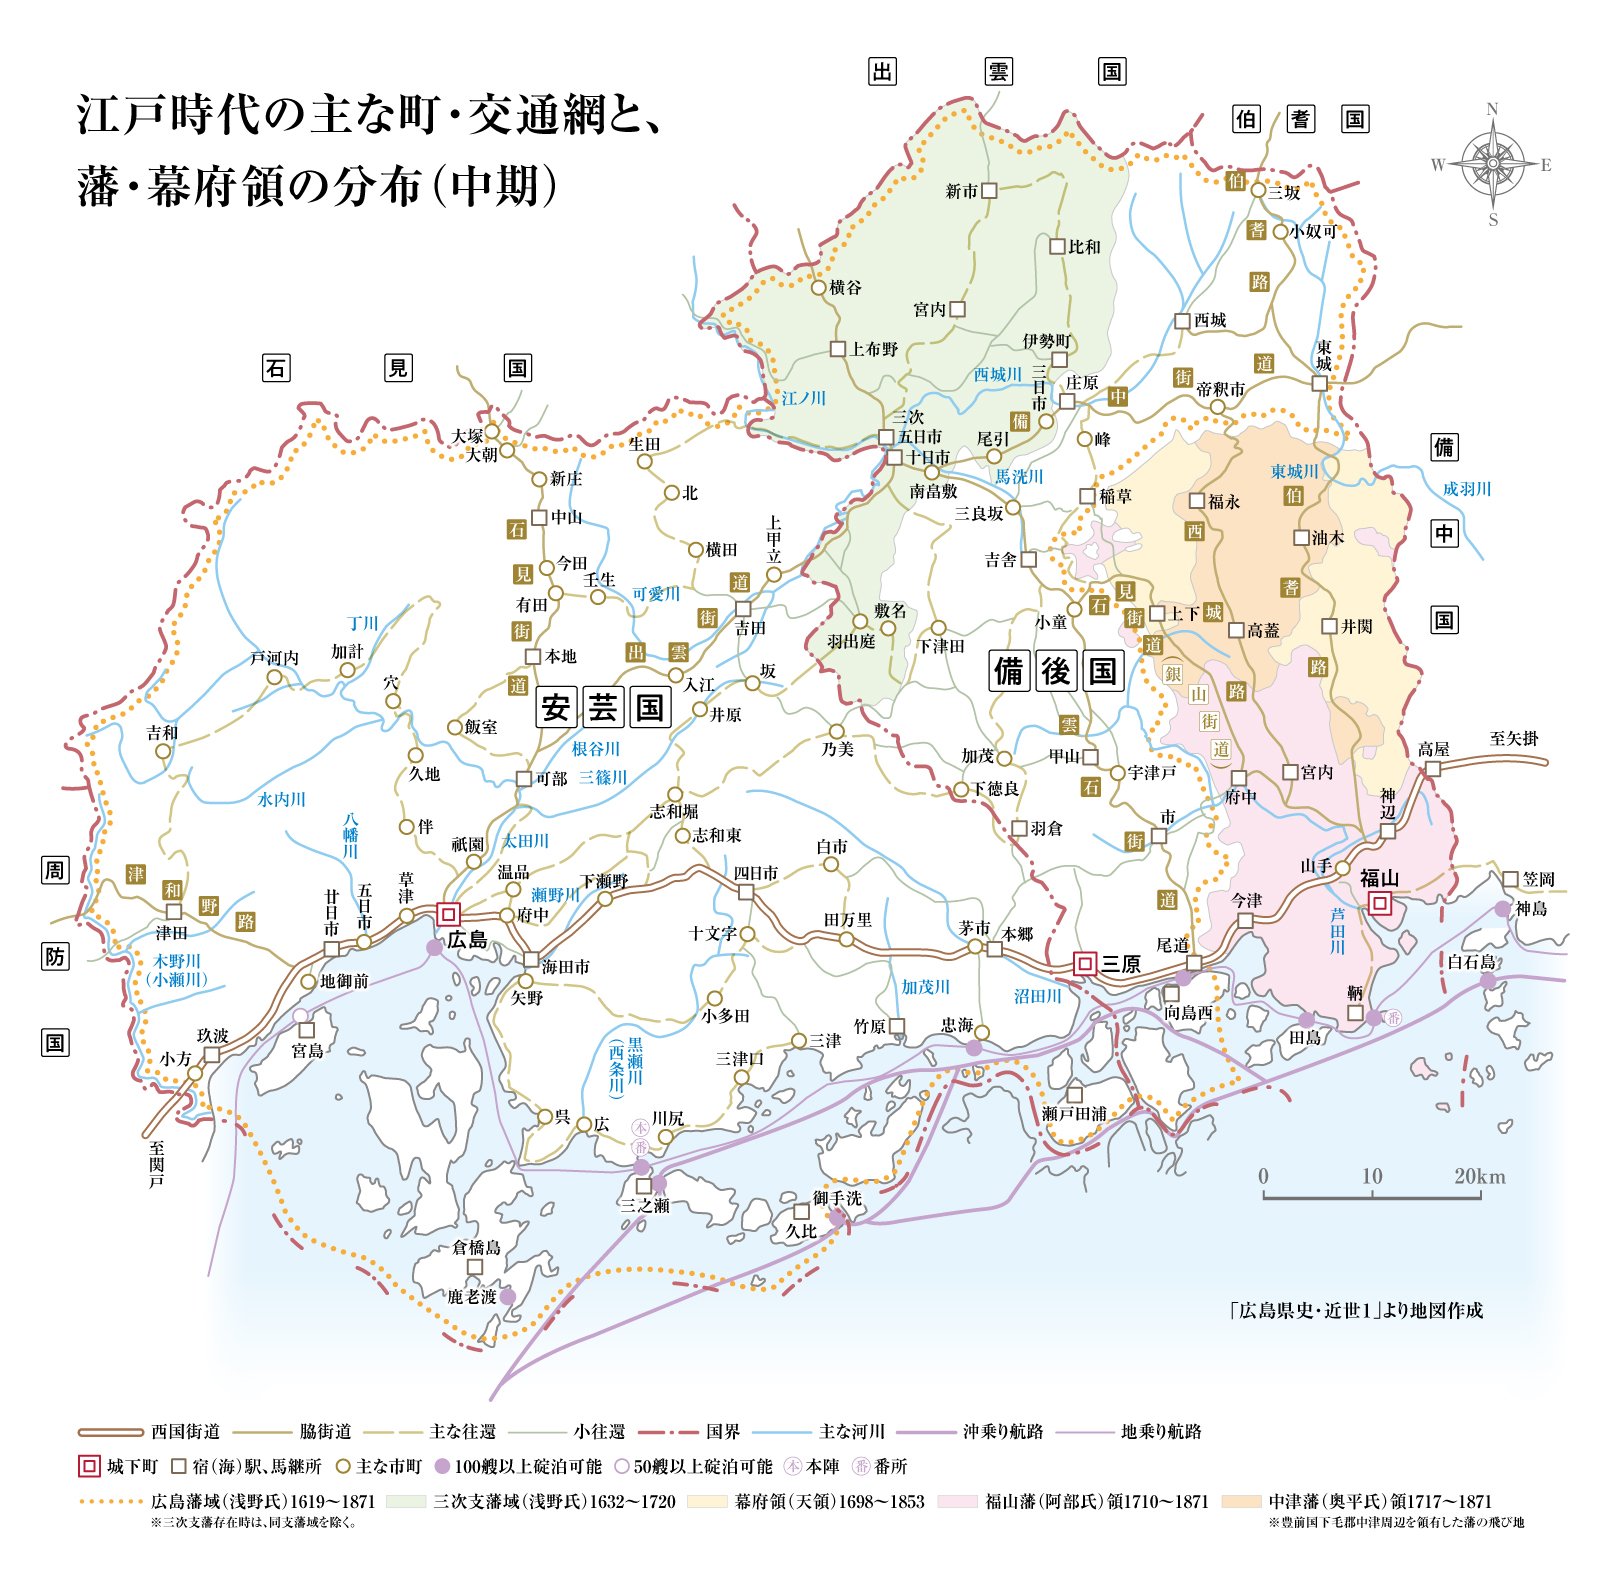 主な町・交通網と、藩・幕府領の分布（中期）